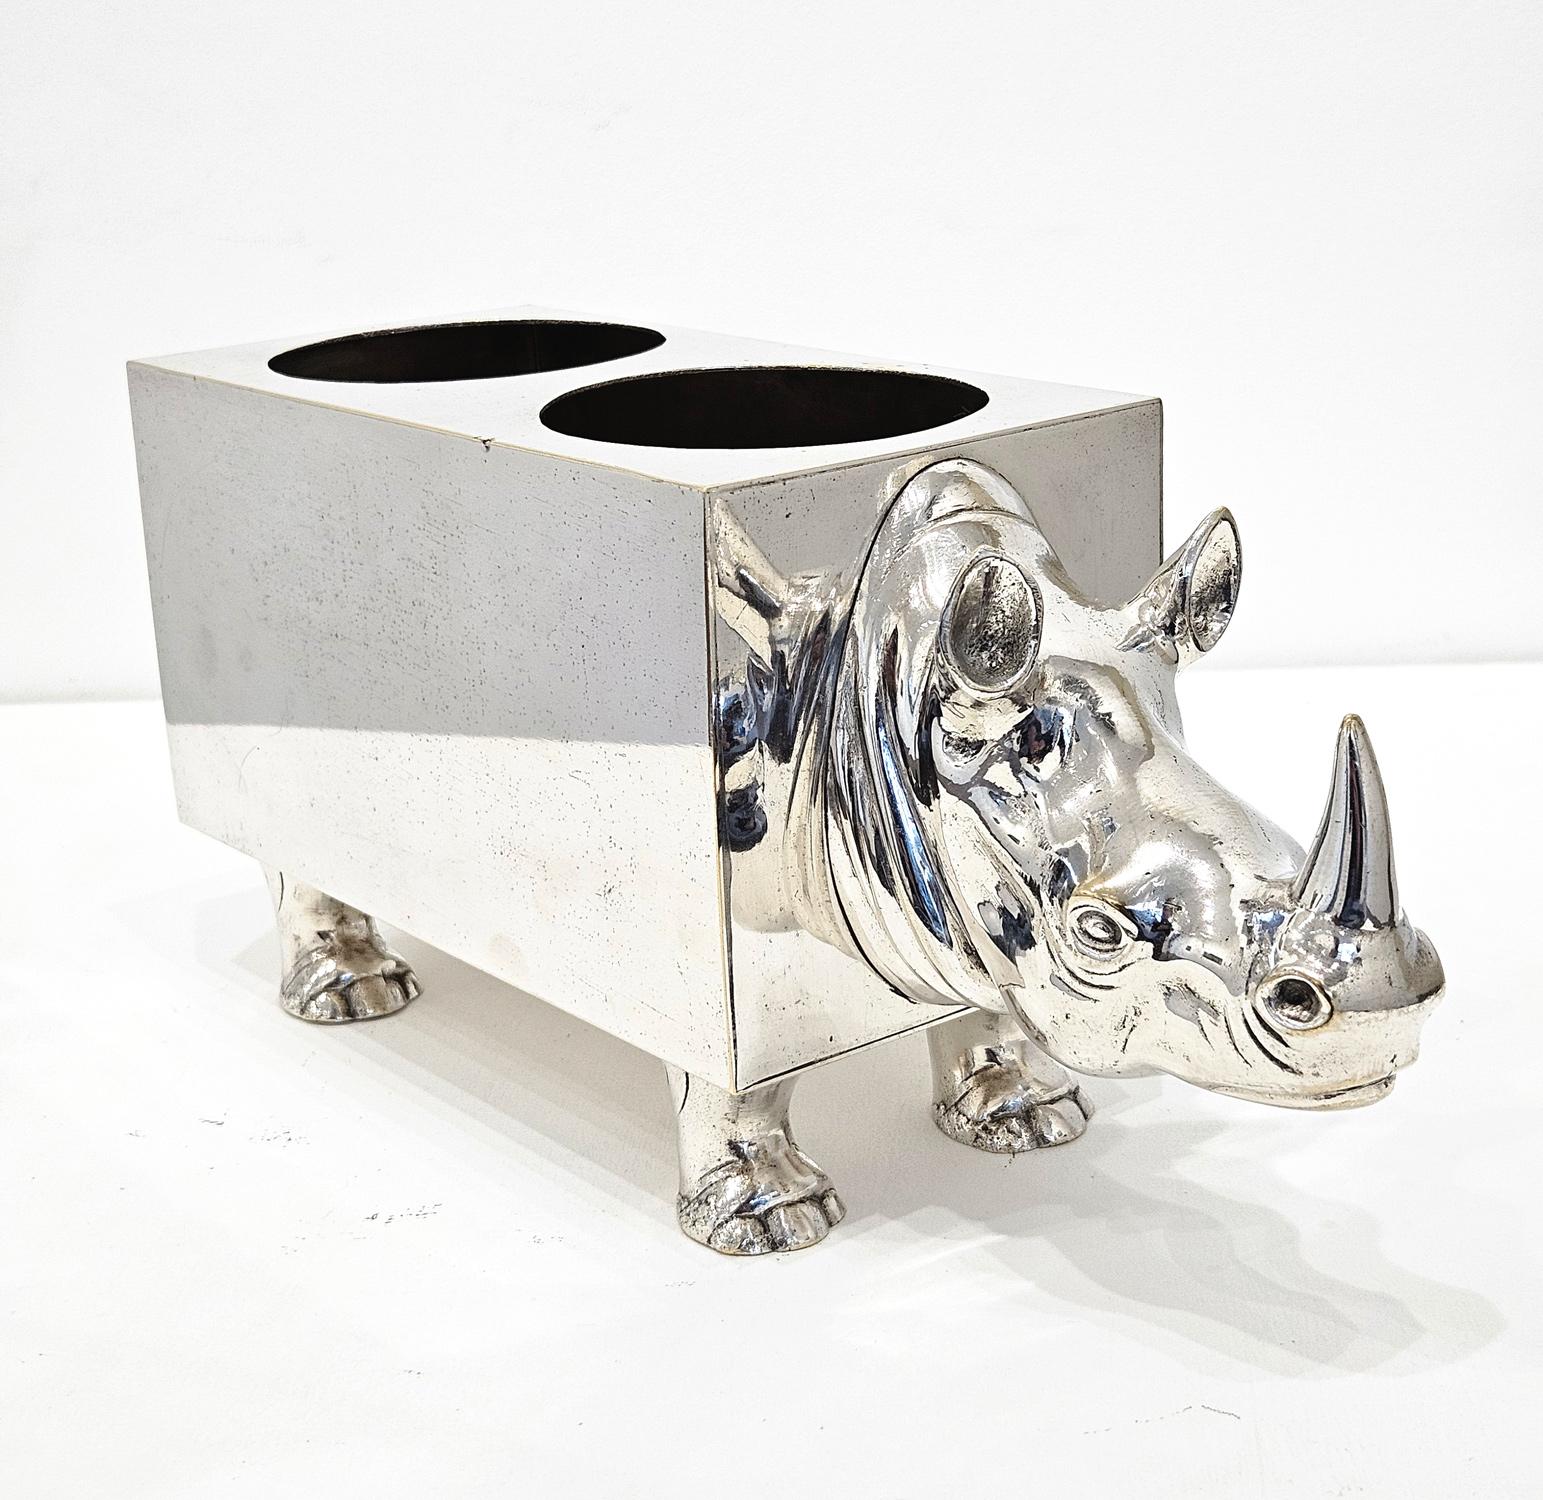 Un double porte-bouteille en métal argenté du milieu du 20e siècle en forme de rhinocéros, fabriqué en Espagne vers les années 1960. 

Il s'agit d'un objet des plus charmants, avec la tête, les pieds et la queue du rhinocéros magnifiquement